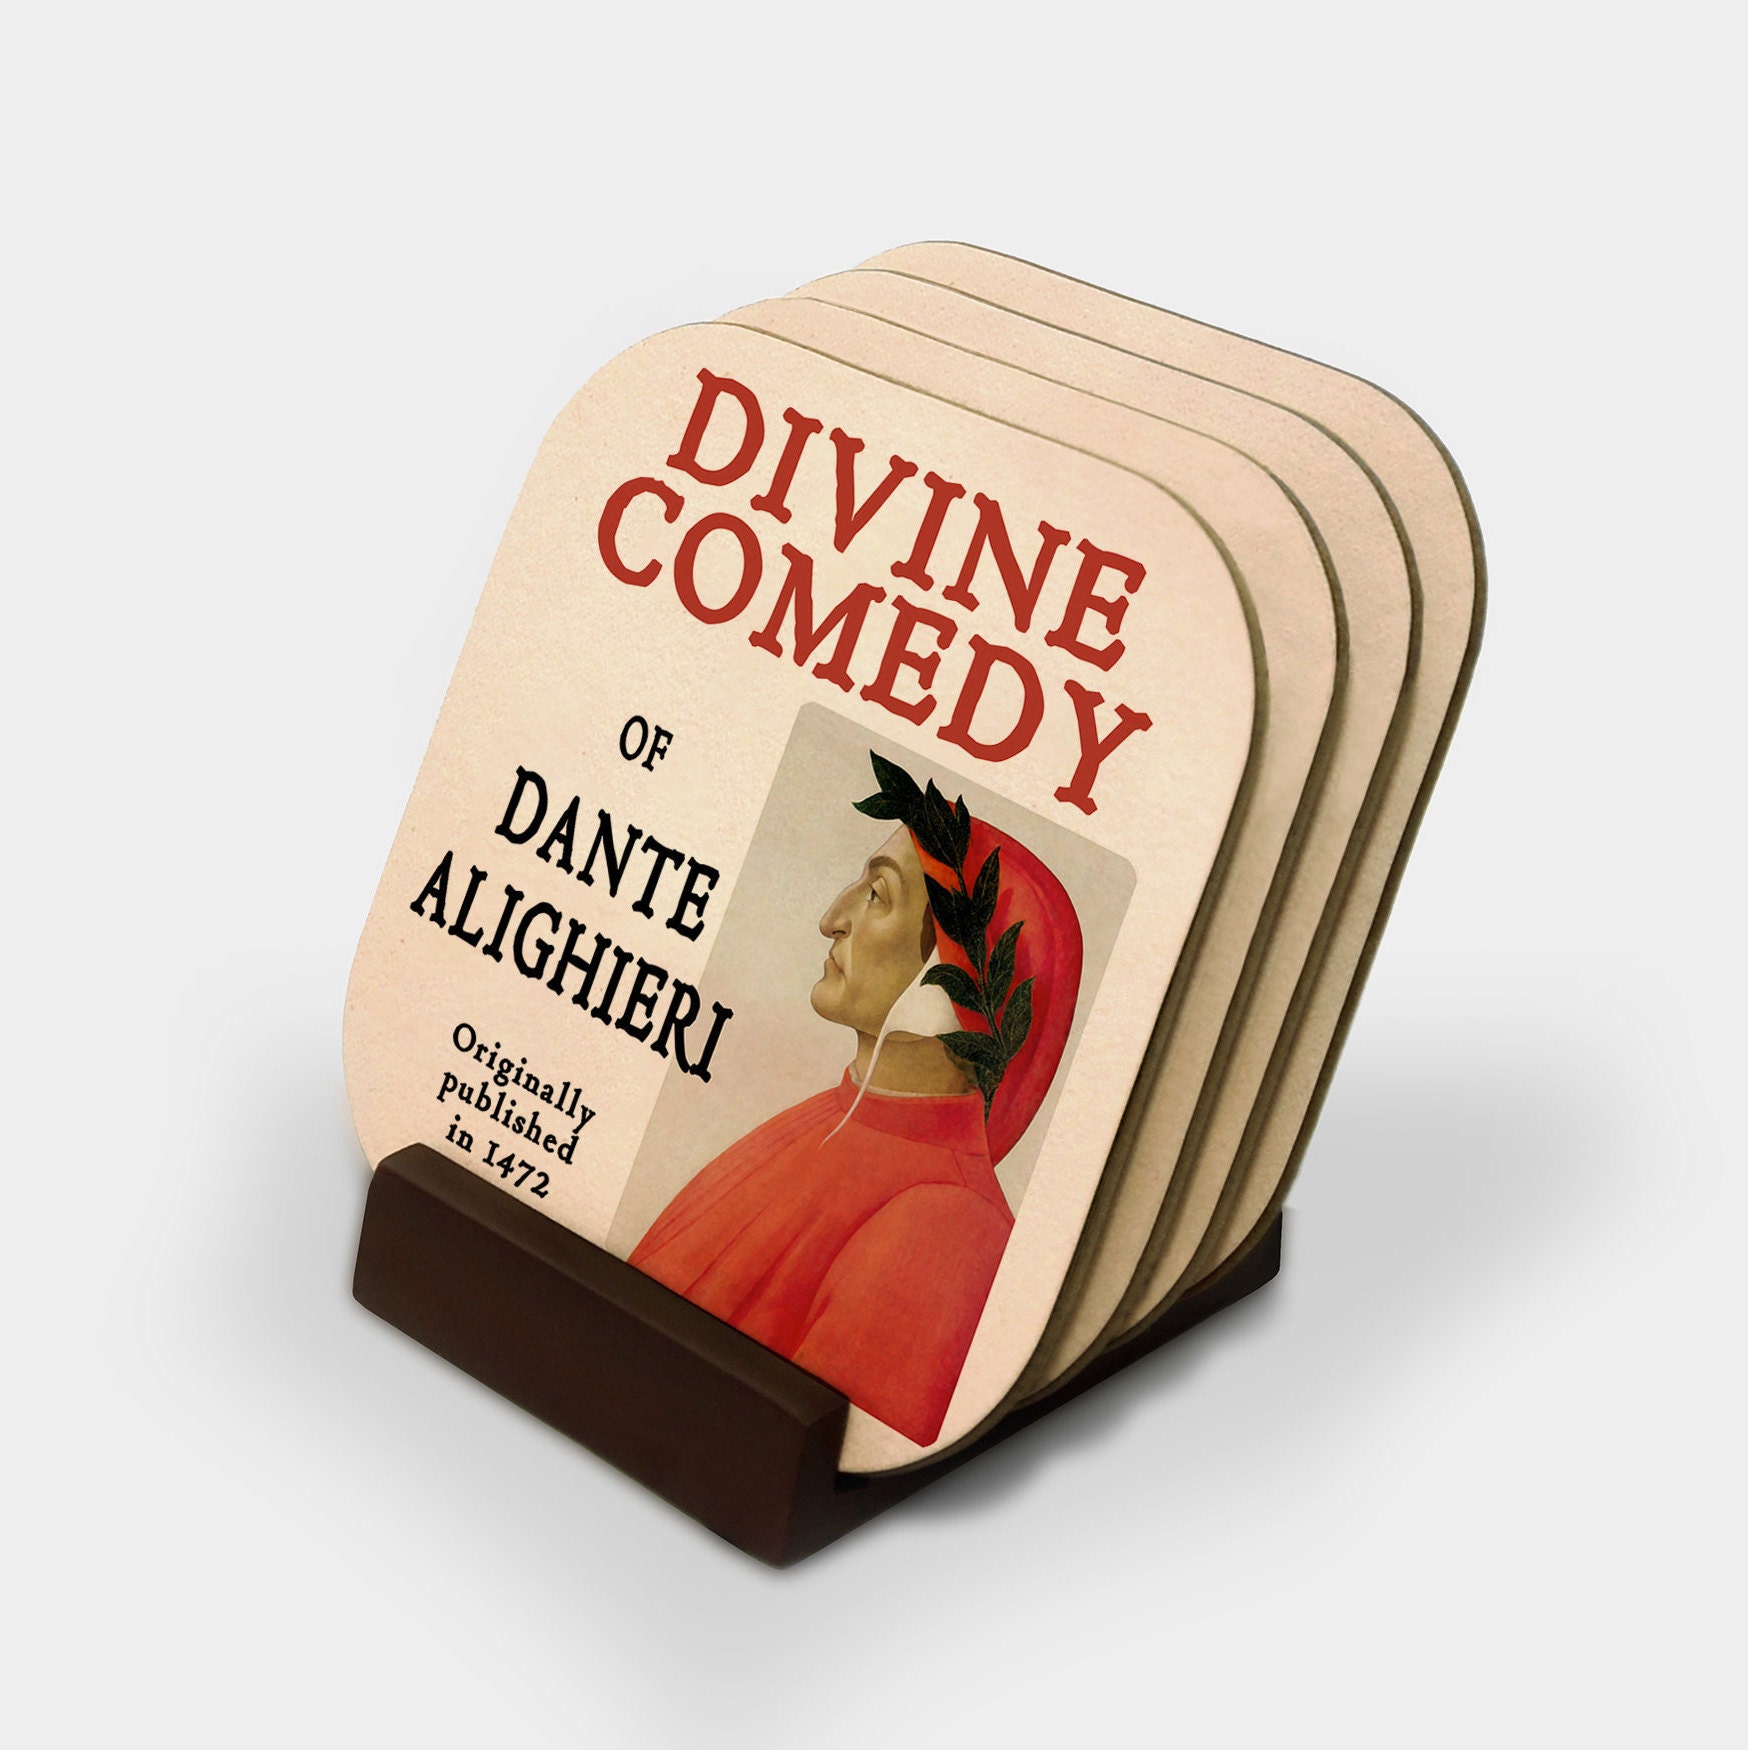 Dantes Divine Comedy Inferno: 9781784046347 - AbeBooks